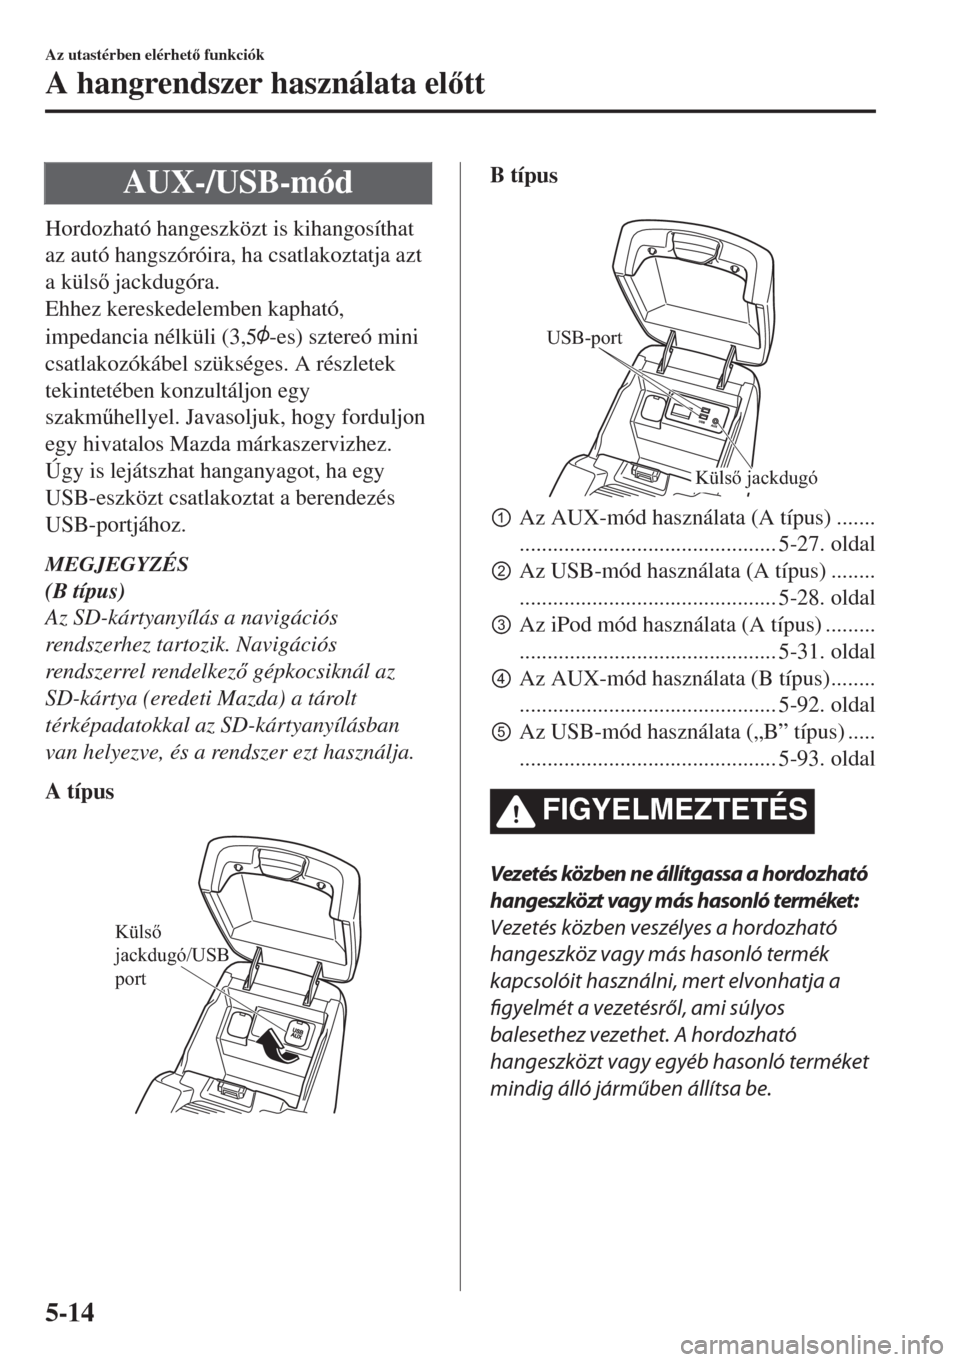 MAZDA MODEL 6 2018  Kezelési útmutató (in Hungarian) AUX-/USB-mód
Hordozható hangeszközt is kihangosíthat
az autó hangszóróira, ha csatlakoztatja azt
a küls jackdugóra.
Ehhez kereskedelemben kapható,
impedancia nélküli (3,5
-es) sztereó m